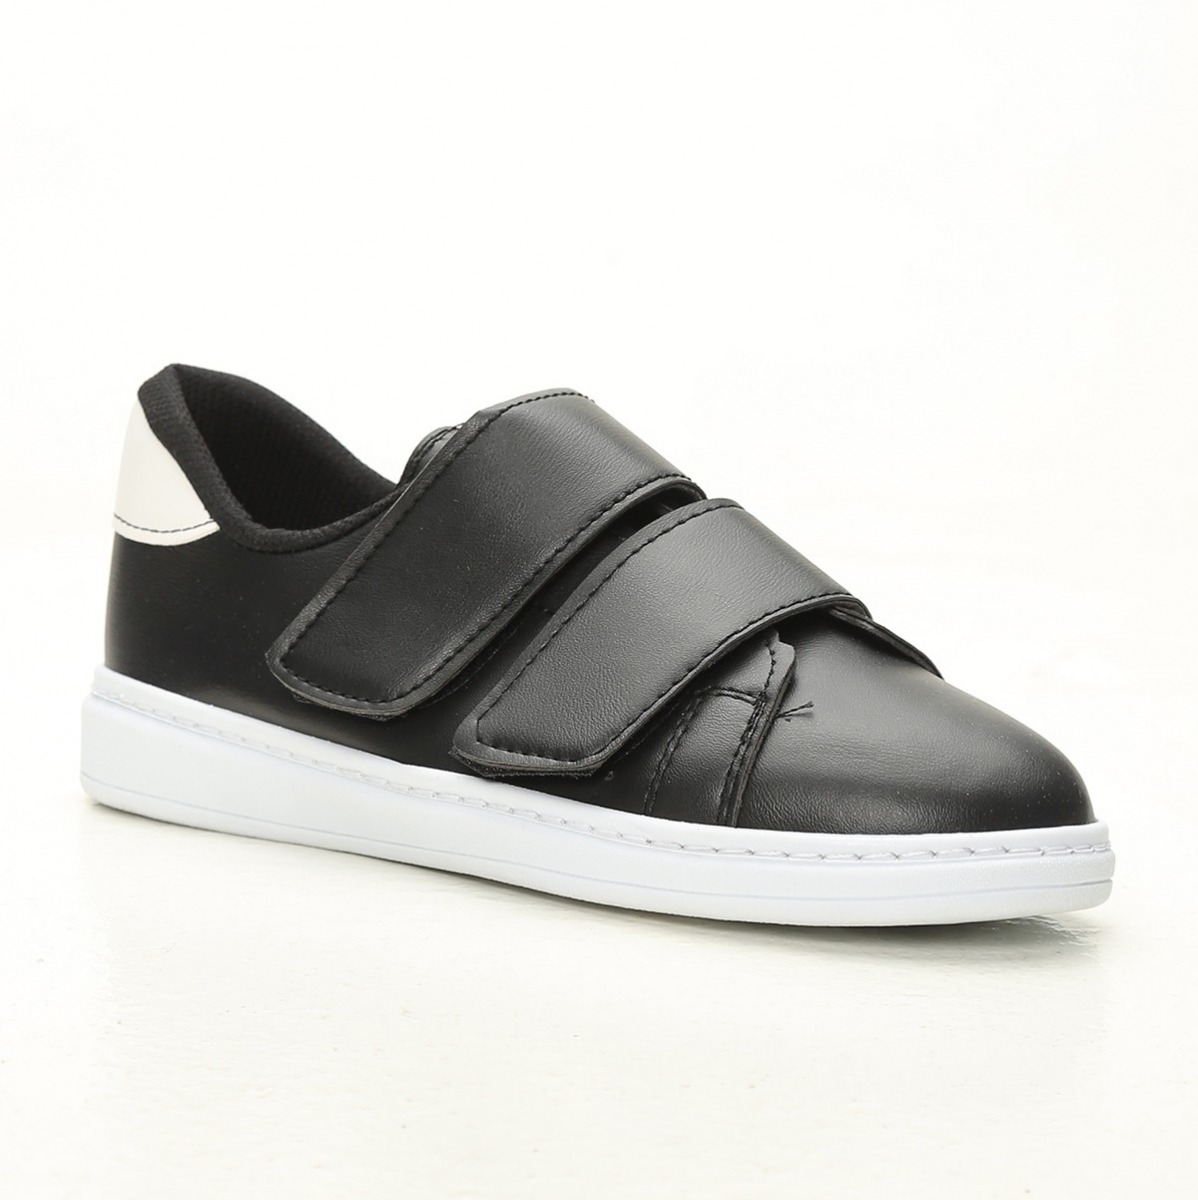 Flo Siyah-Beyaz-Beyaz Kadın Cırtlı Spor Ayakkabı 4000-19-101003. 2